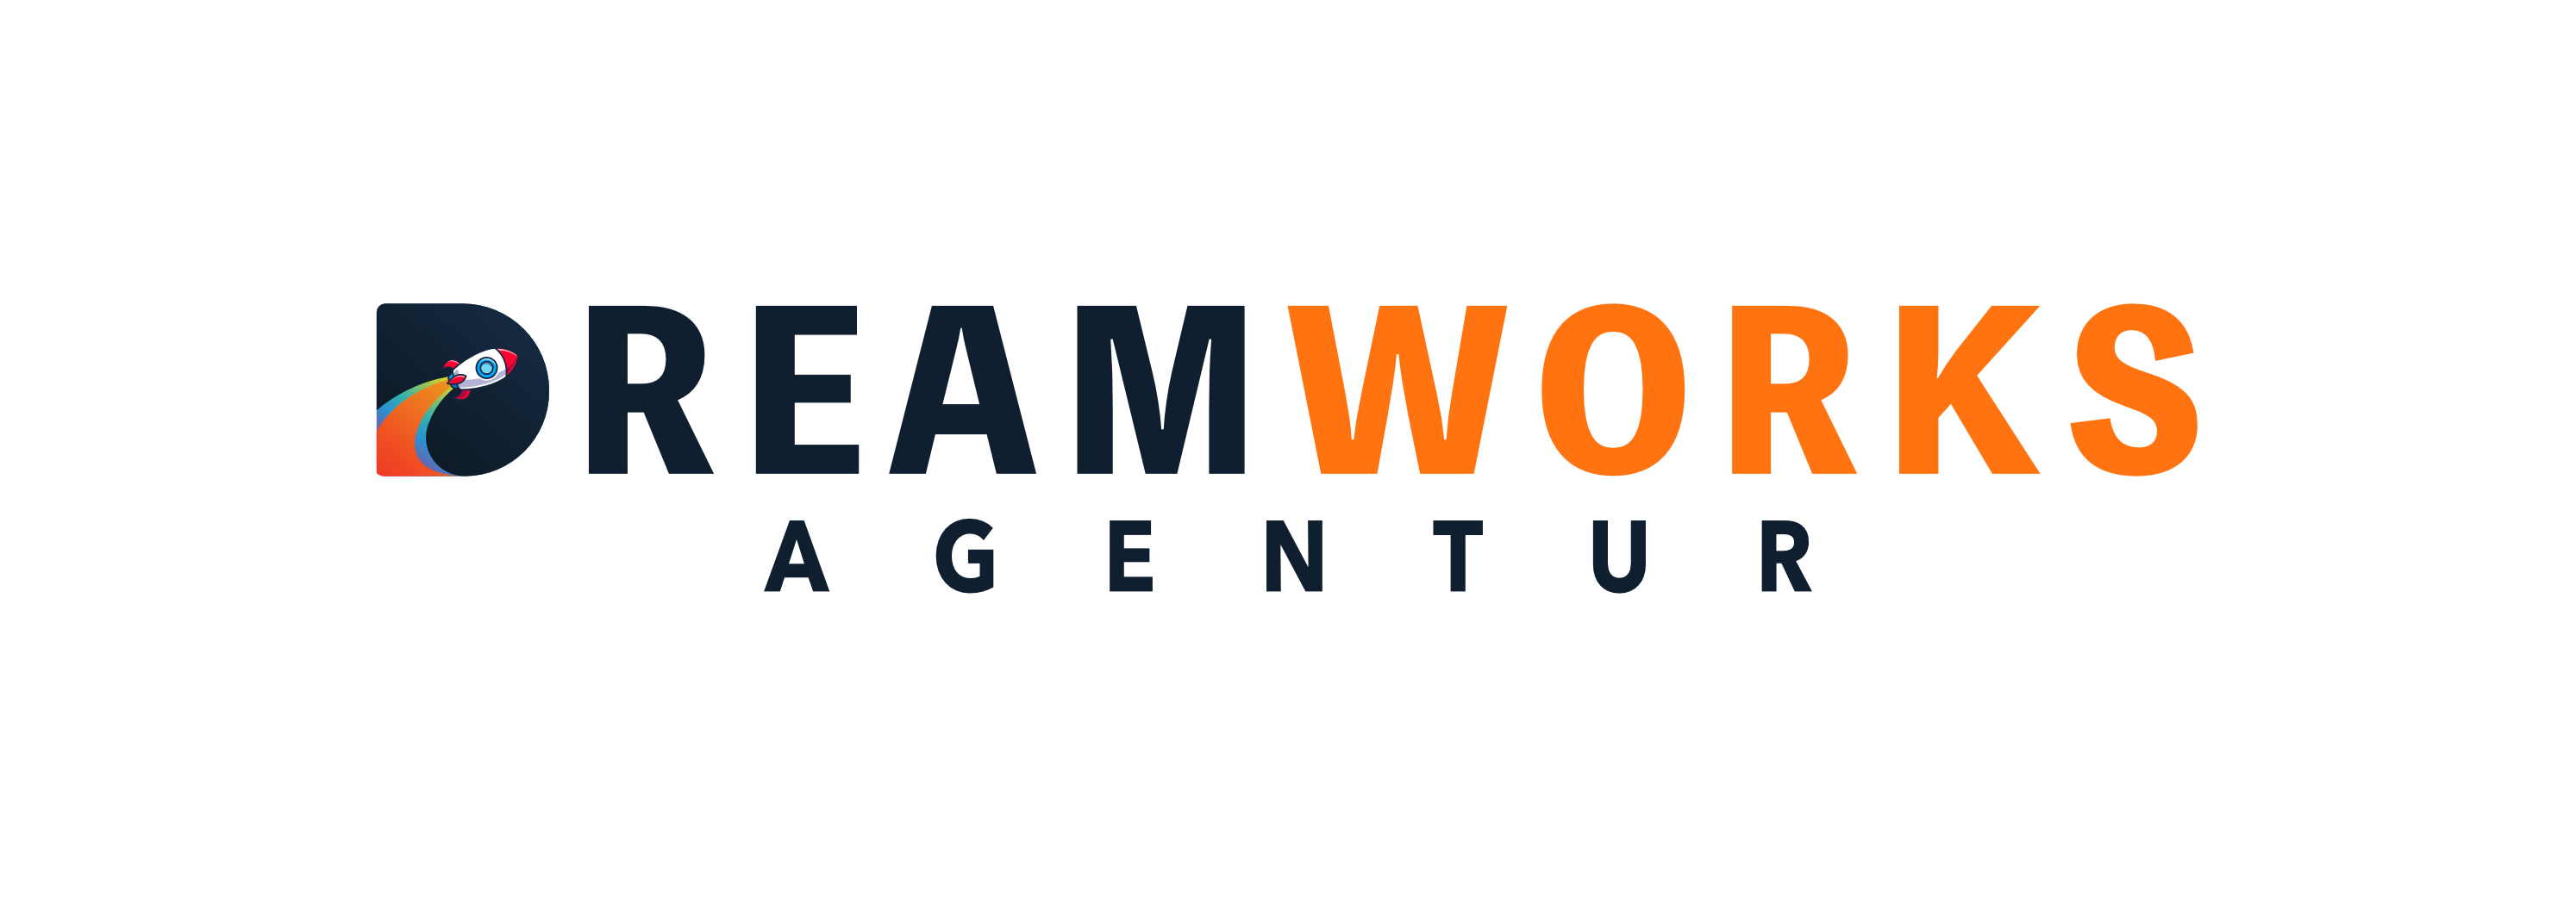 DreamWorks Agentur / startup from Berlin / Background